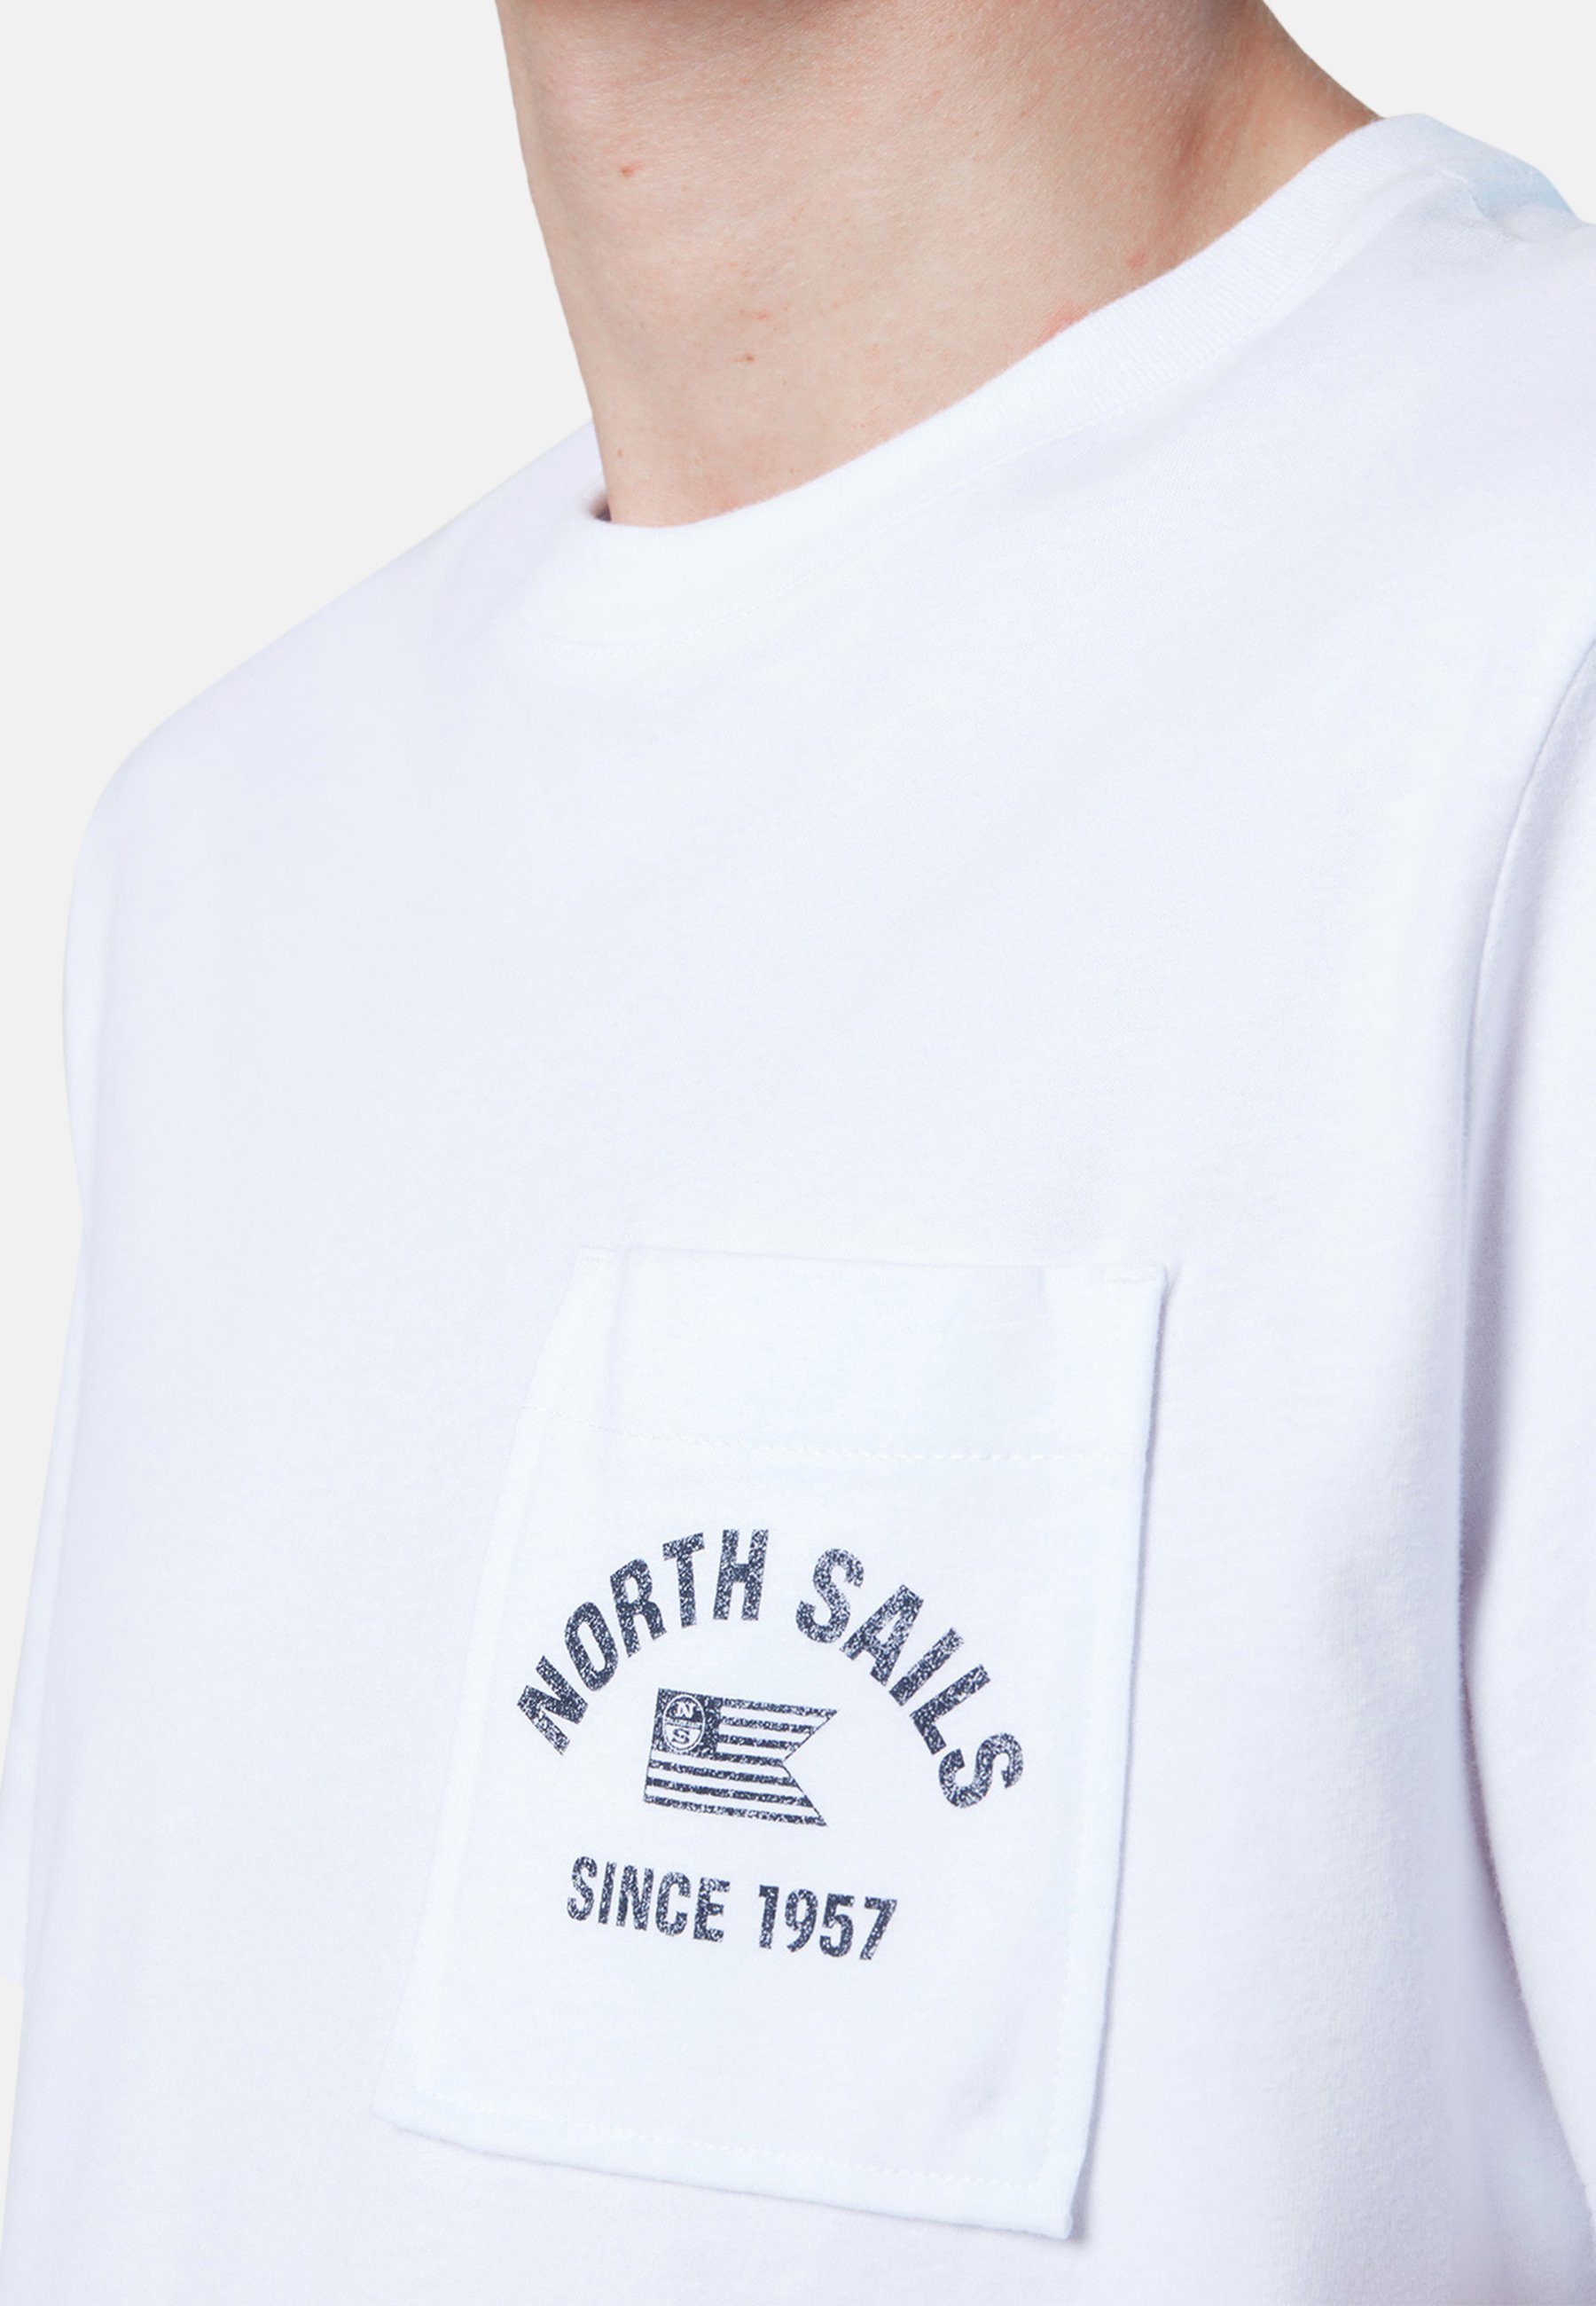 North Sails T-Shirt T-Shirt mit weiss Sonstiges Brusttasche